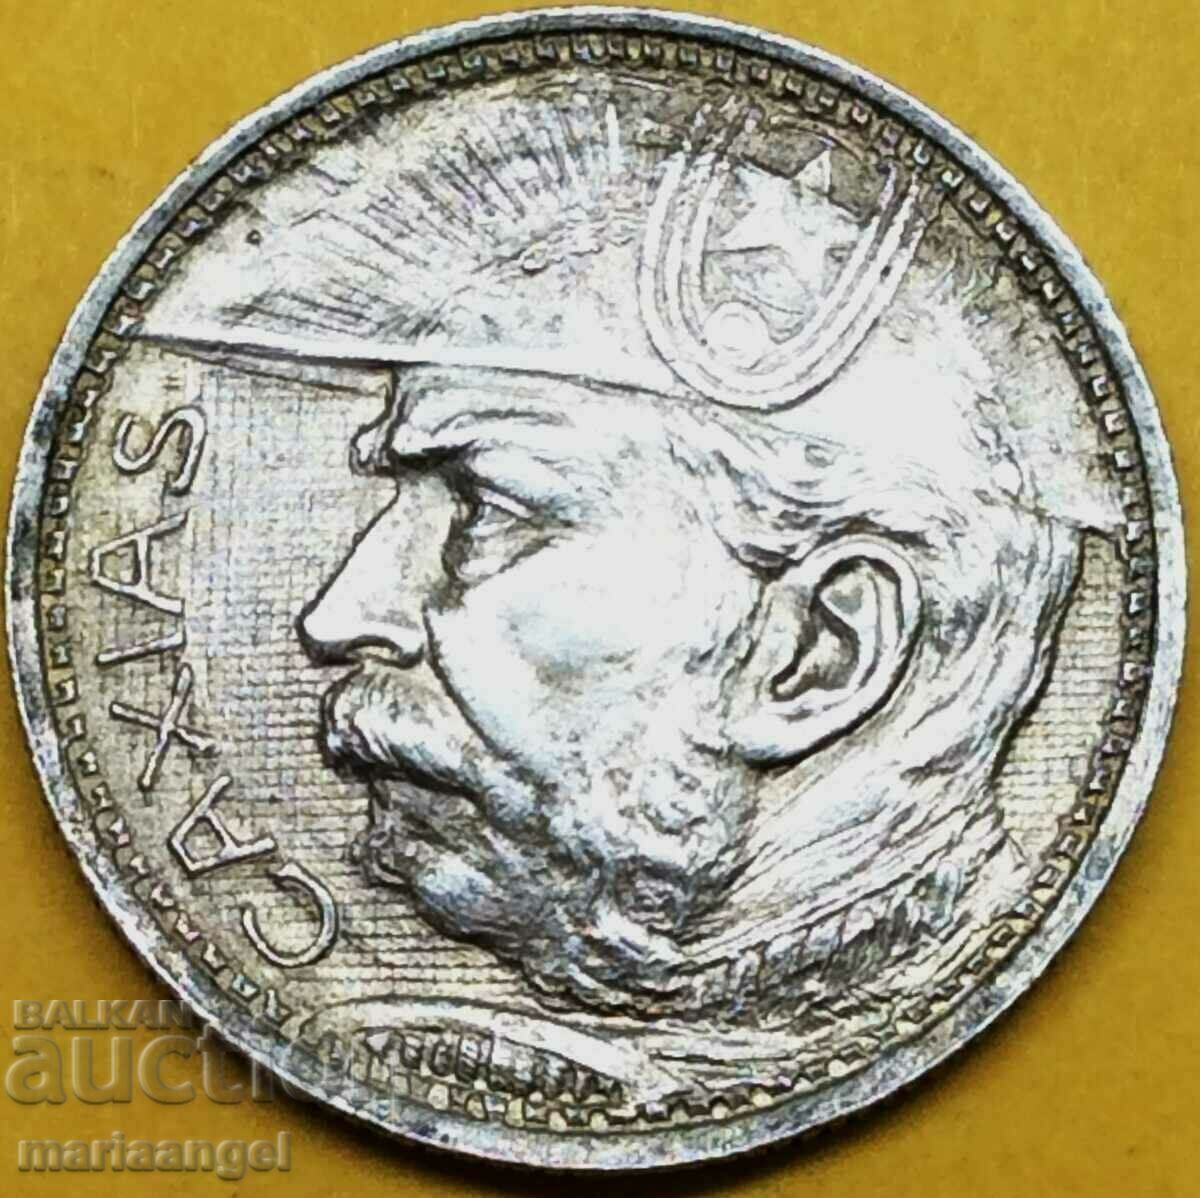 Brazil 1935 2000 reis 8.06g silver Patina